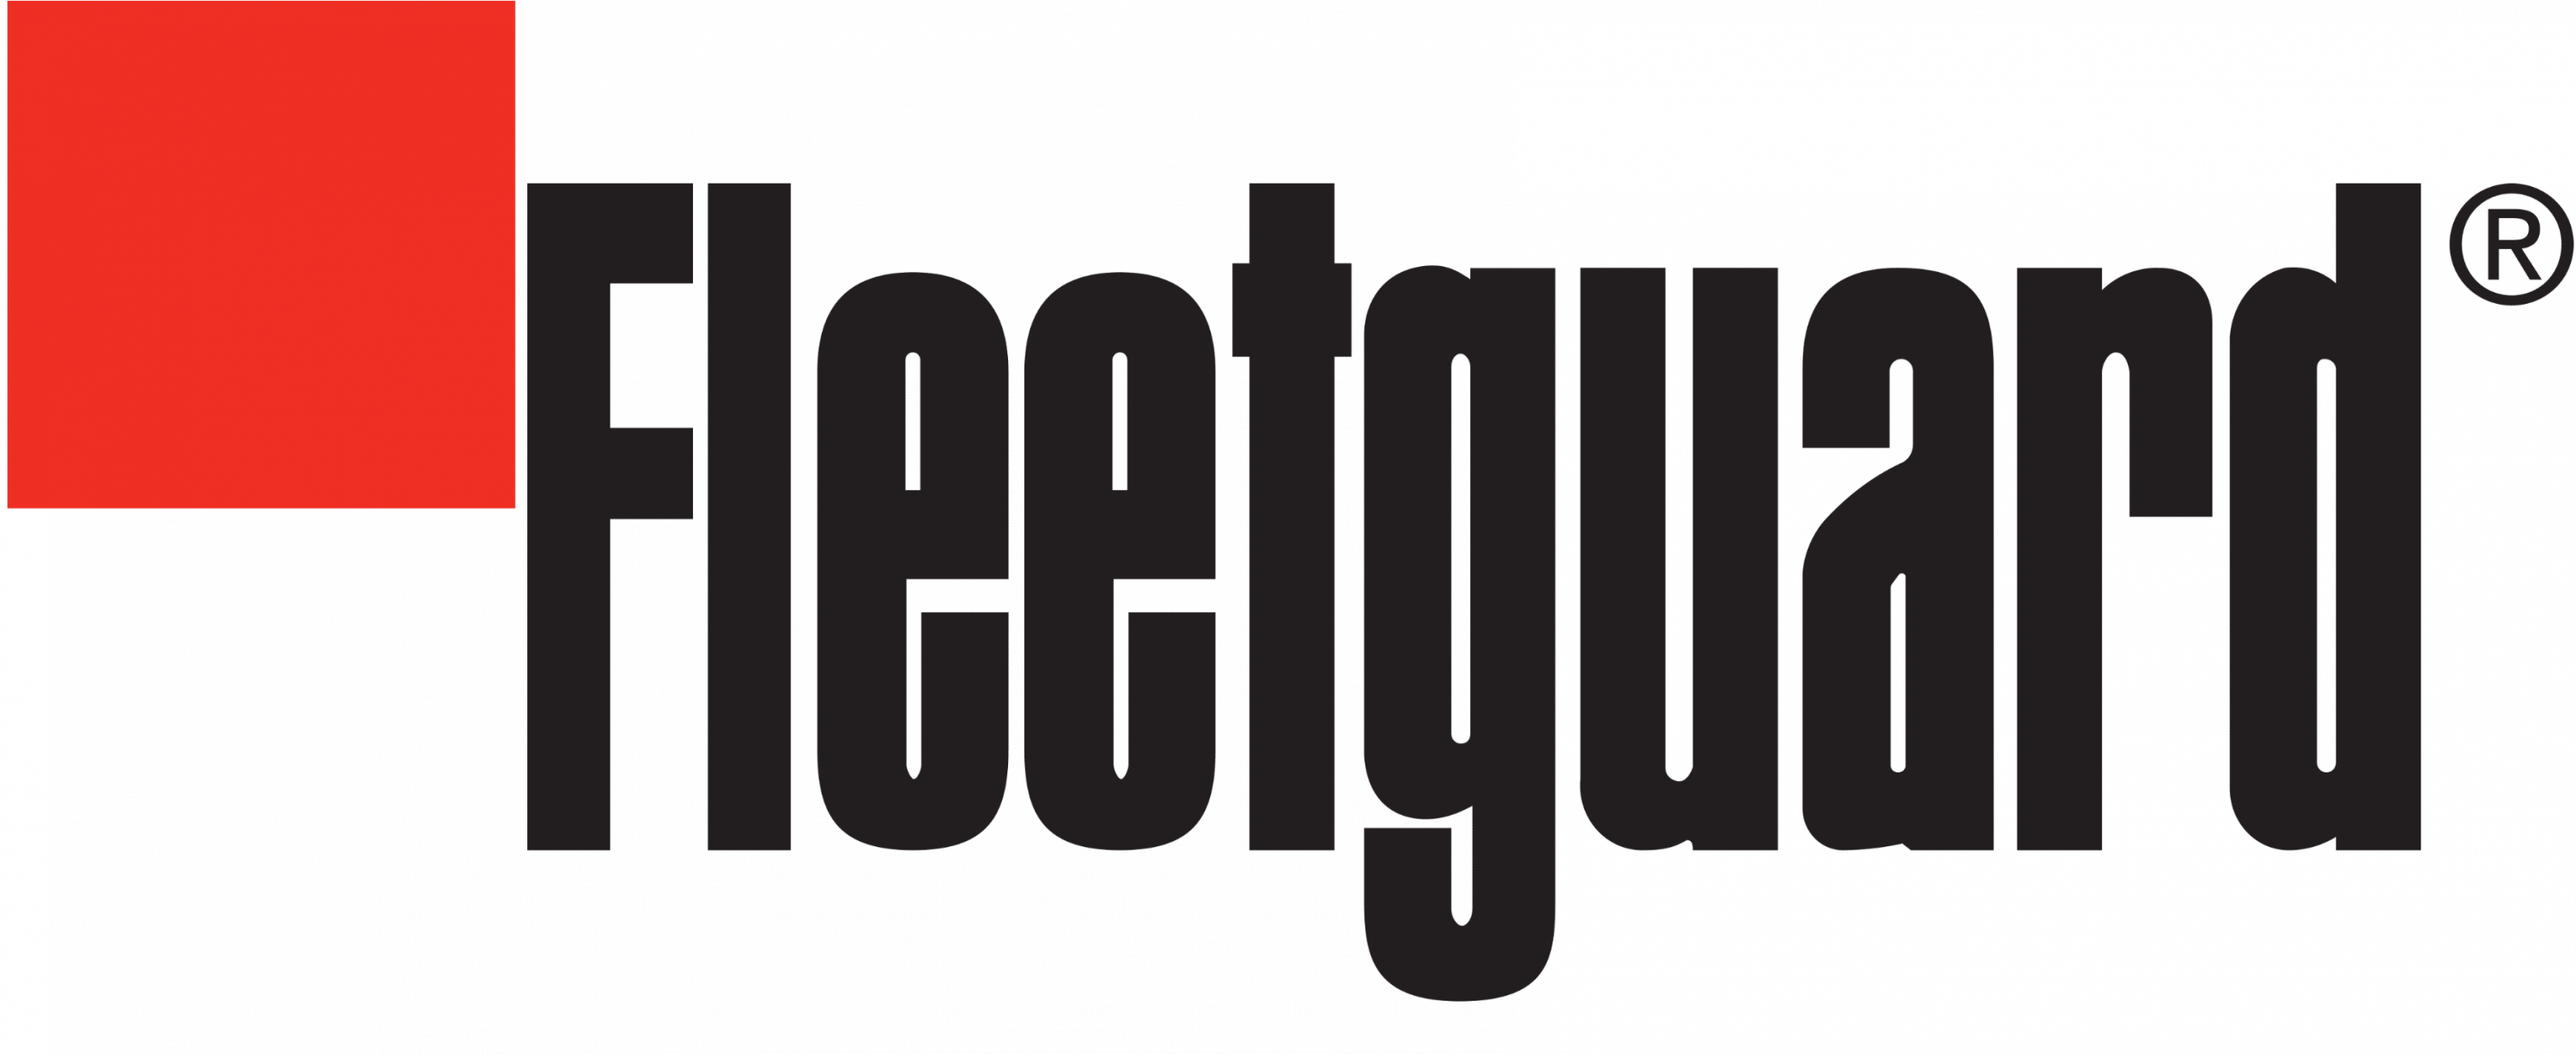 Fleetgaurd-logo